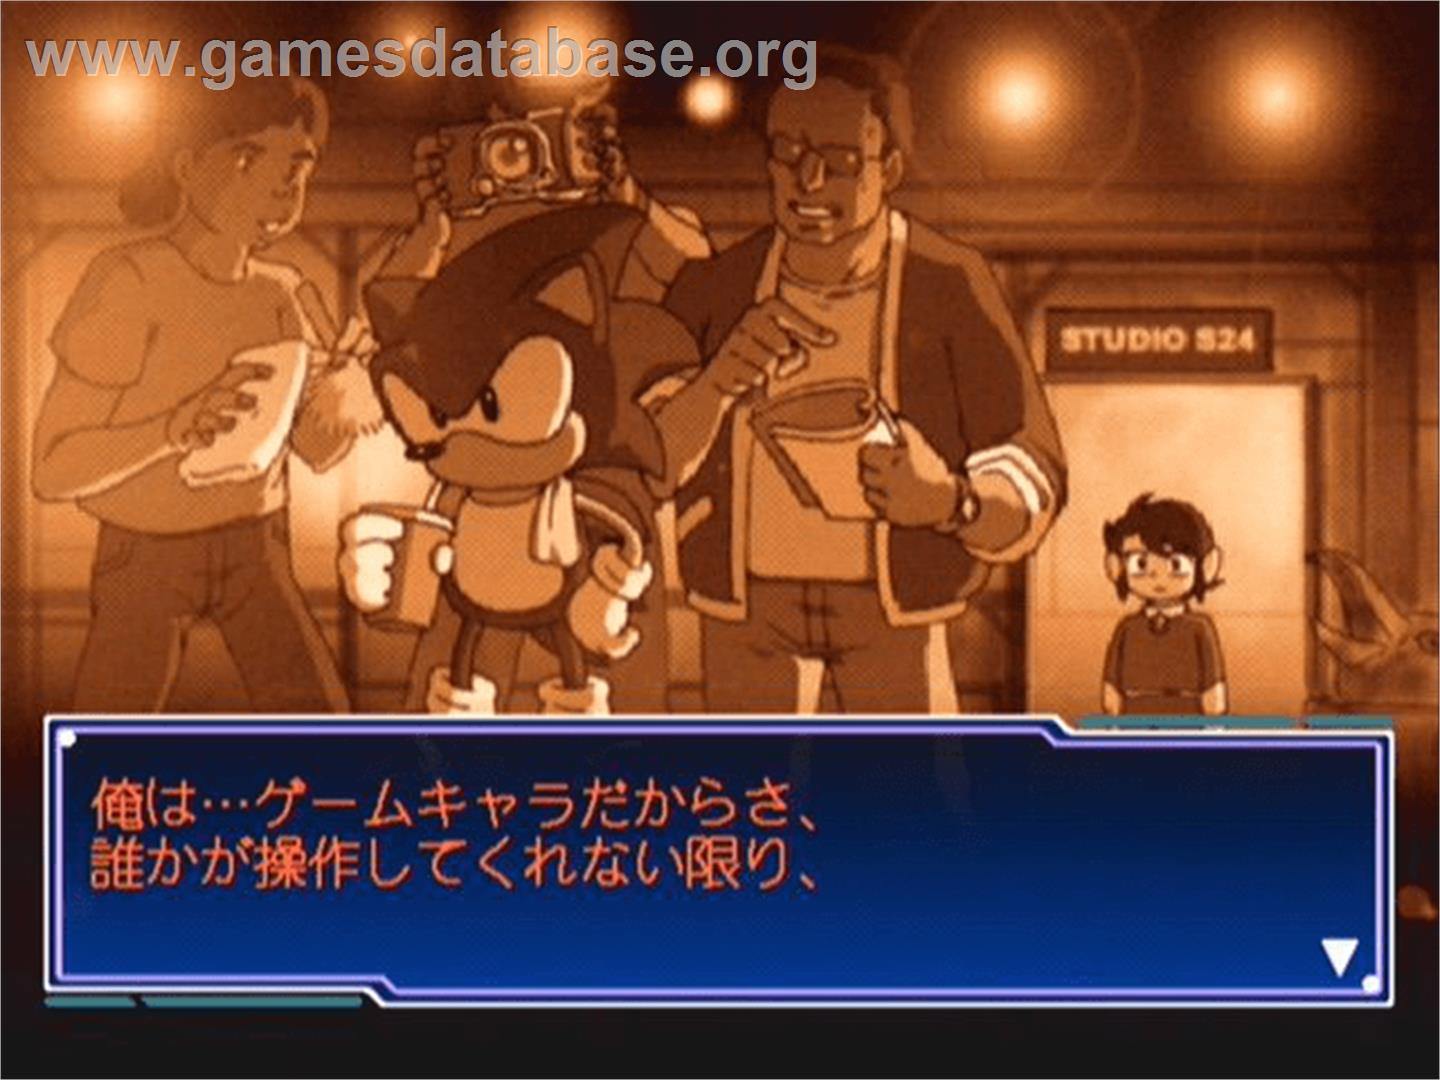 Segagaga - Sega Dreamcast - Artwork - In Game